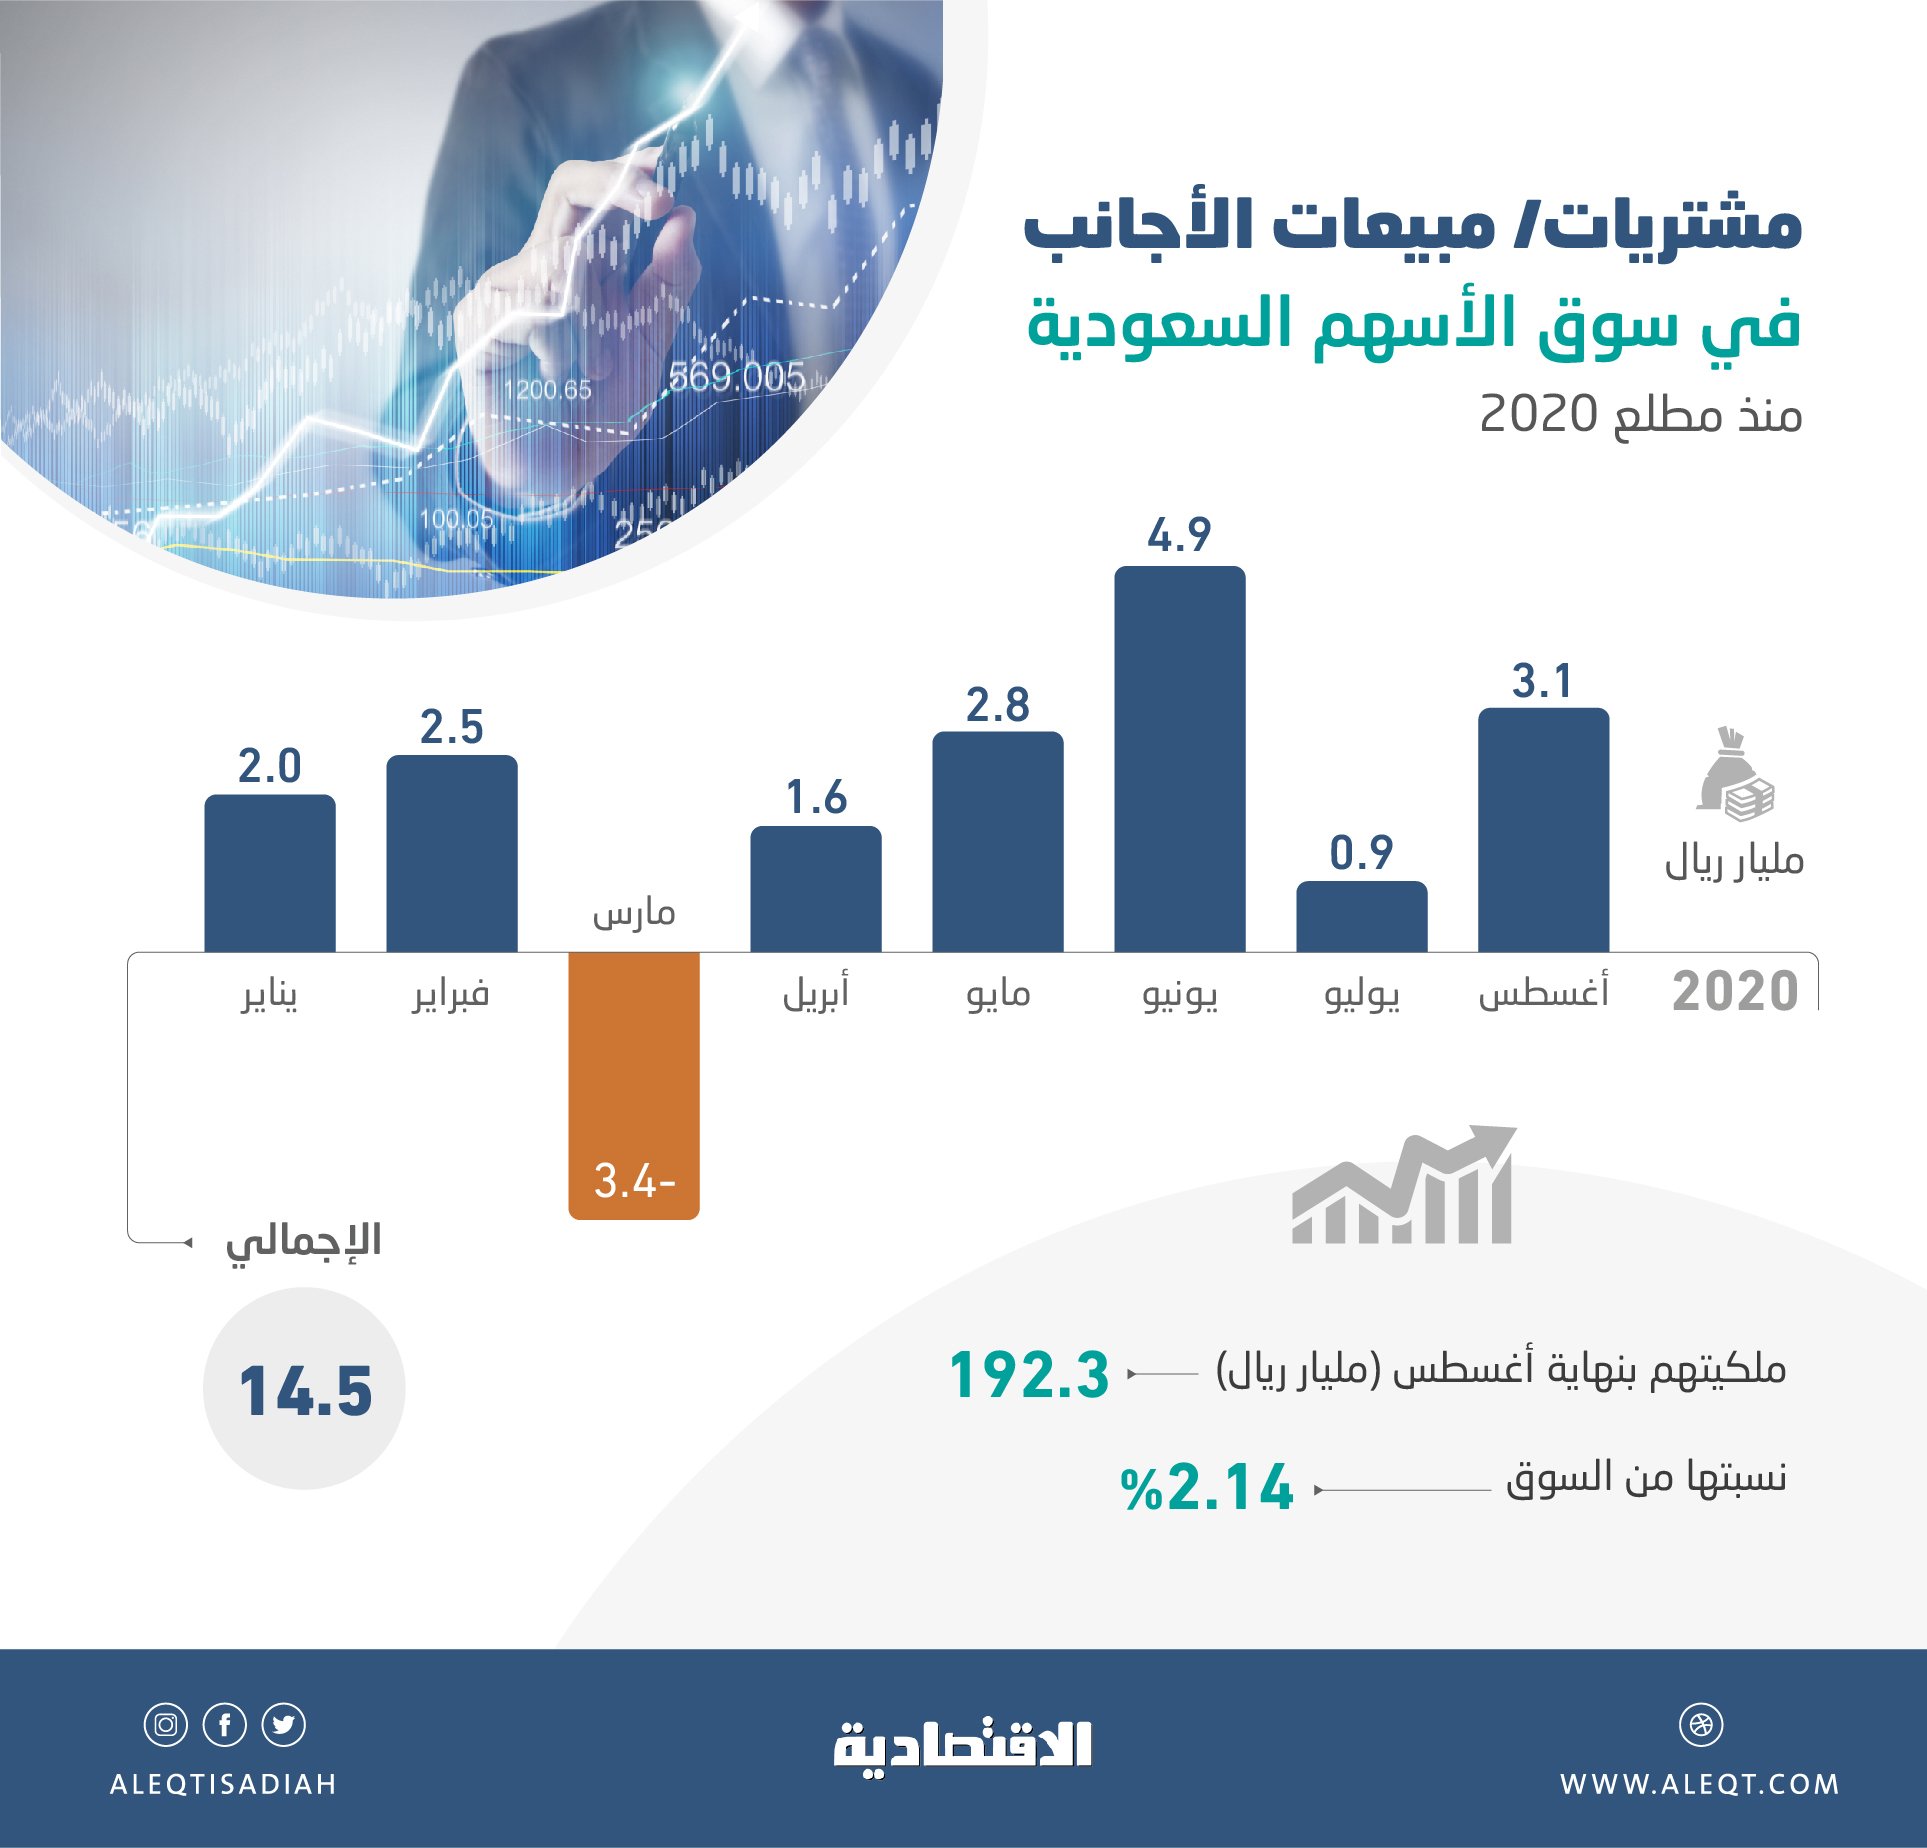 صحيفة الاقتصادية تقارير الاقتصادية الاستثمارات الأجنبية في الأسهم السعودية تقفز إلى مستوى تاريخي عند 192 3 مليار ريال انفوجرافيك الاقتصادية عاجل